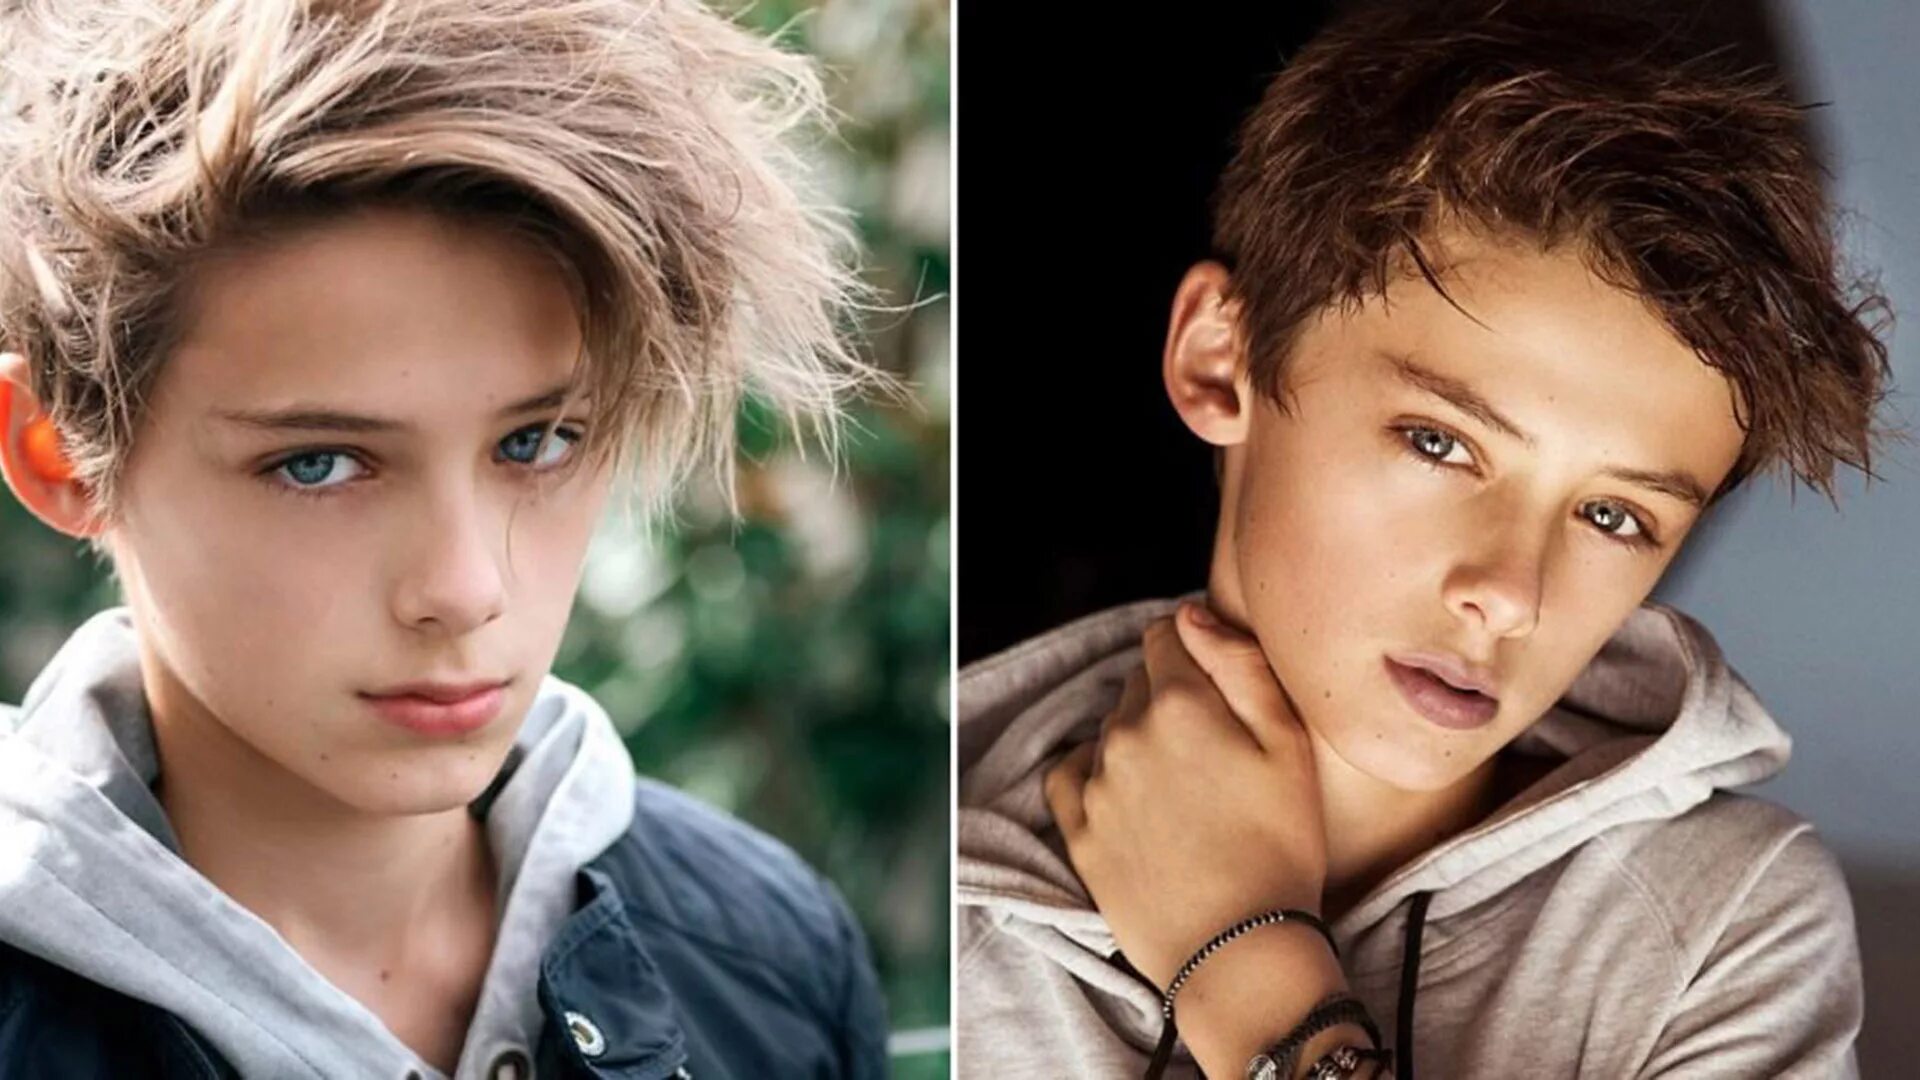 Как быть похожей на мальчика. Самые красивые мальчики в мире 13-14 лет. Самые красивые мальчики 11 лет. Красивые мальчики подростковый Возраст.